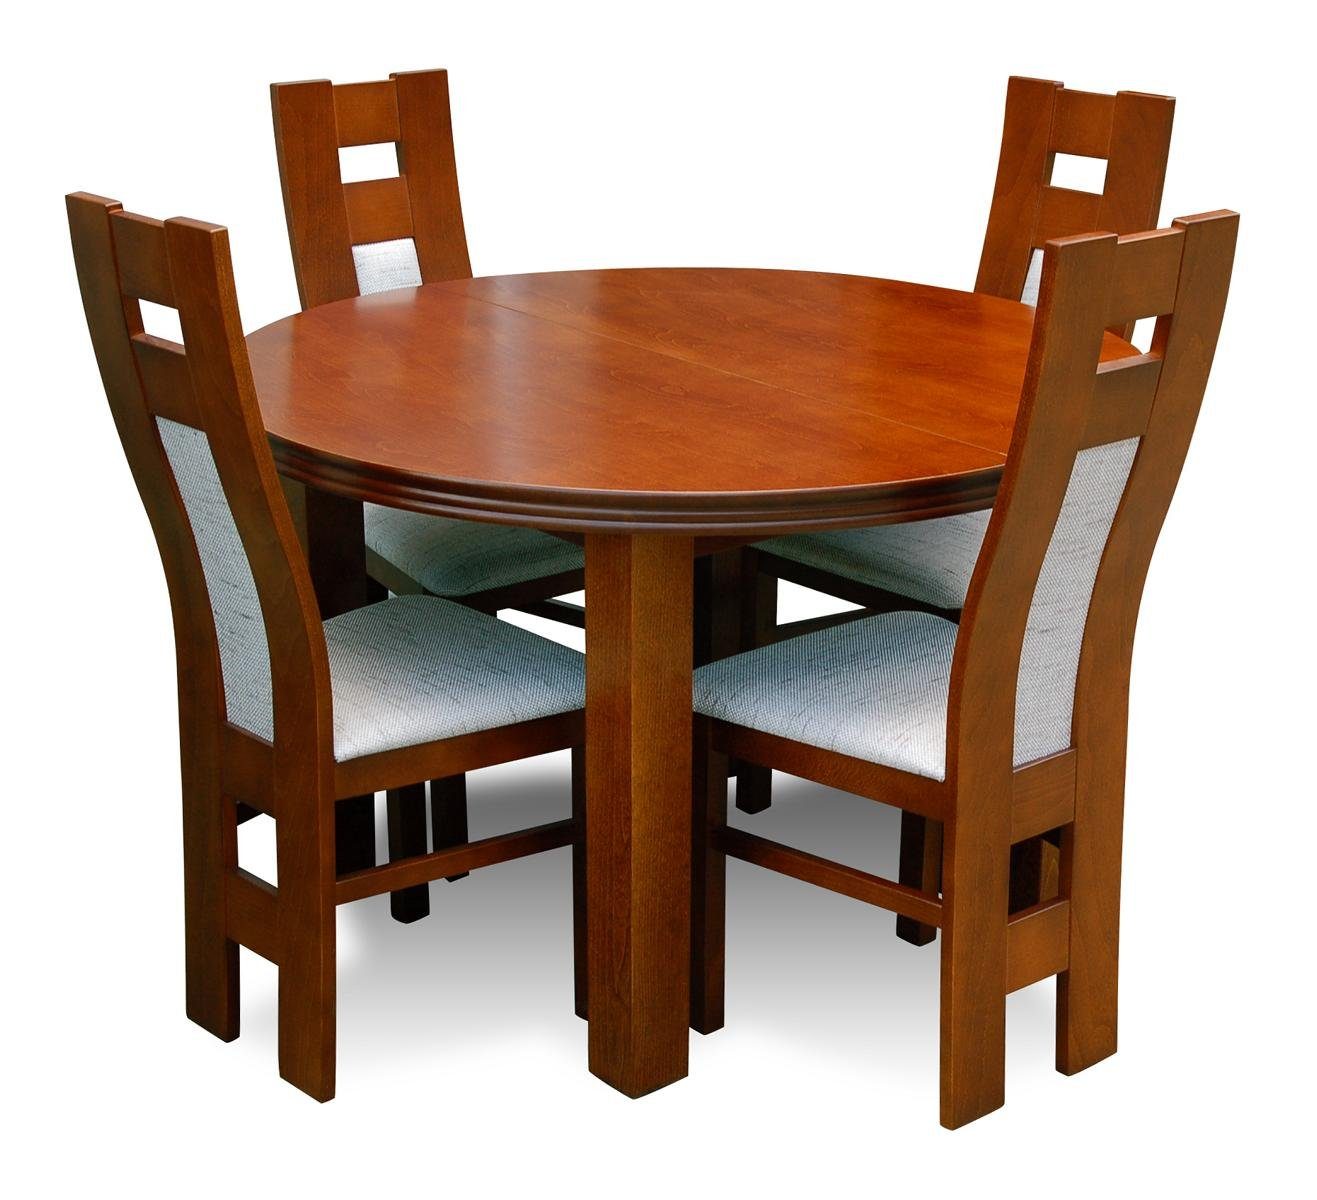 JVmoebel Essgruppe Komplett Set Esstisch 4x Stühle Set Ess Gruppe Holz Tisch Tische 5tlg